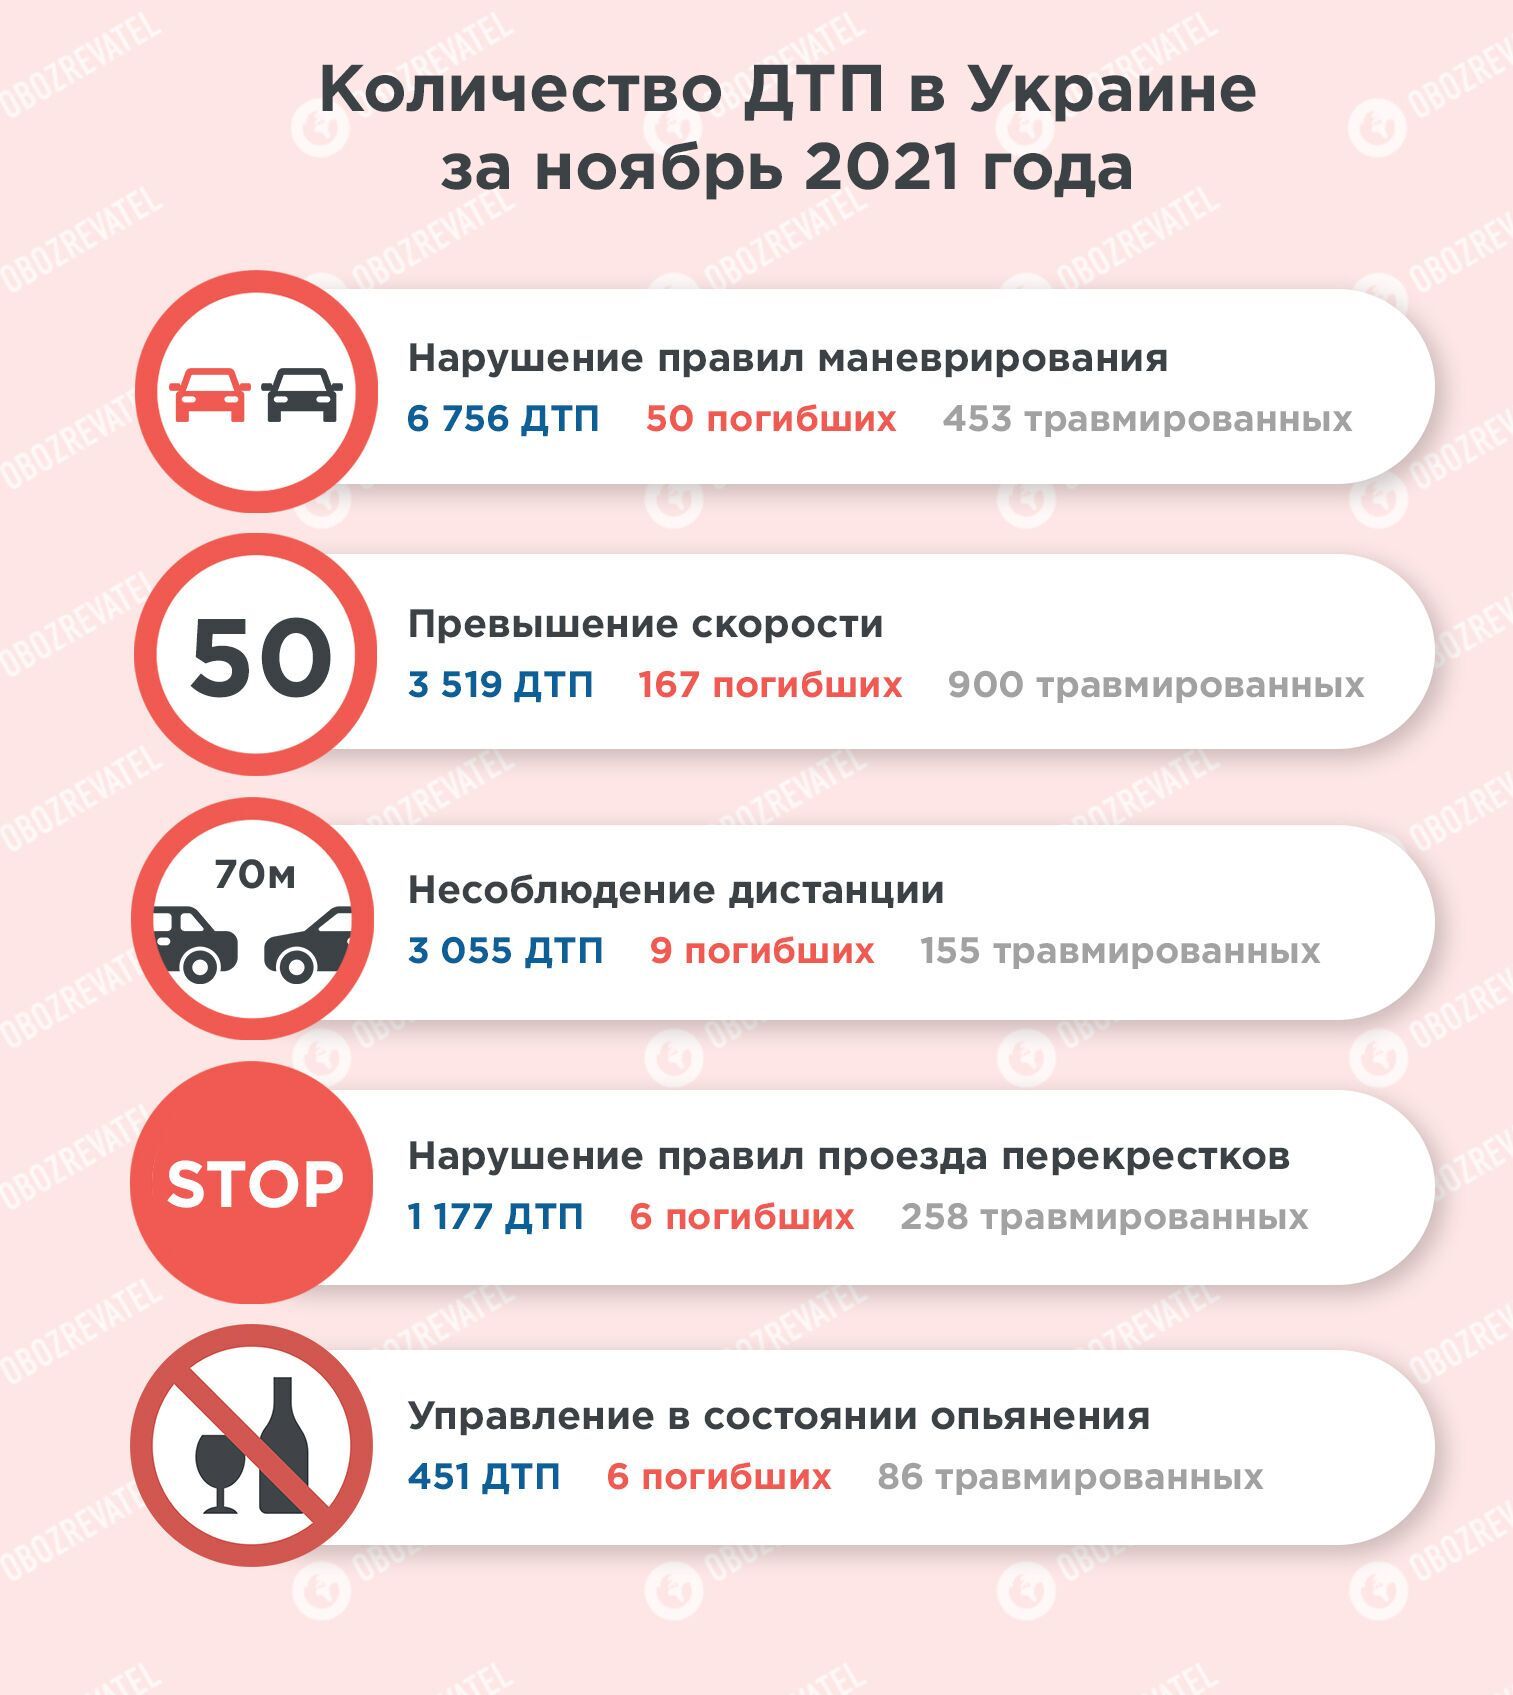 У листопаді в Україні ДТП найчастіше відбувалися через порушення правил маневрування